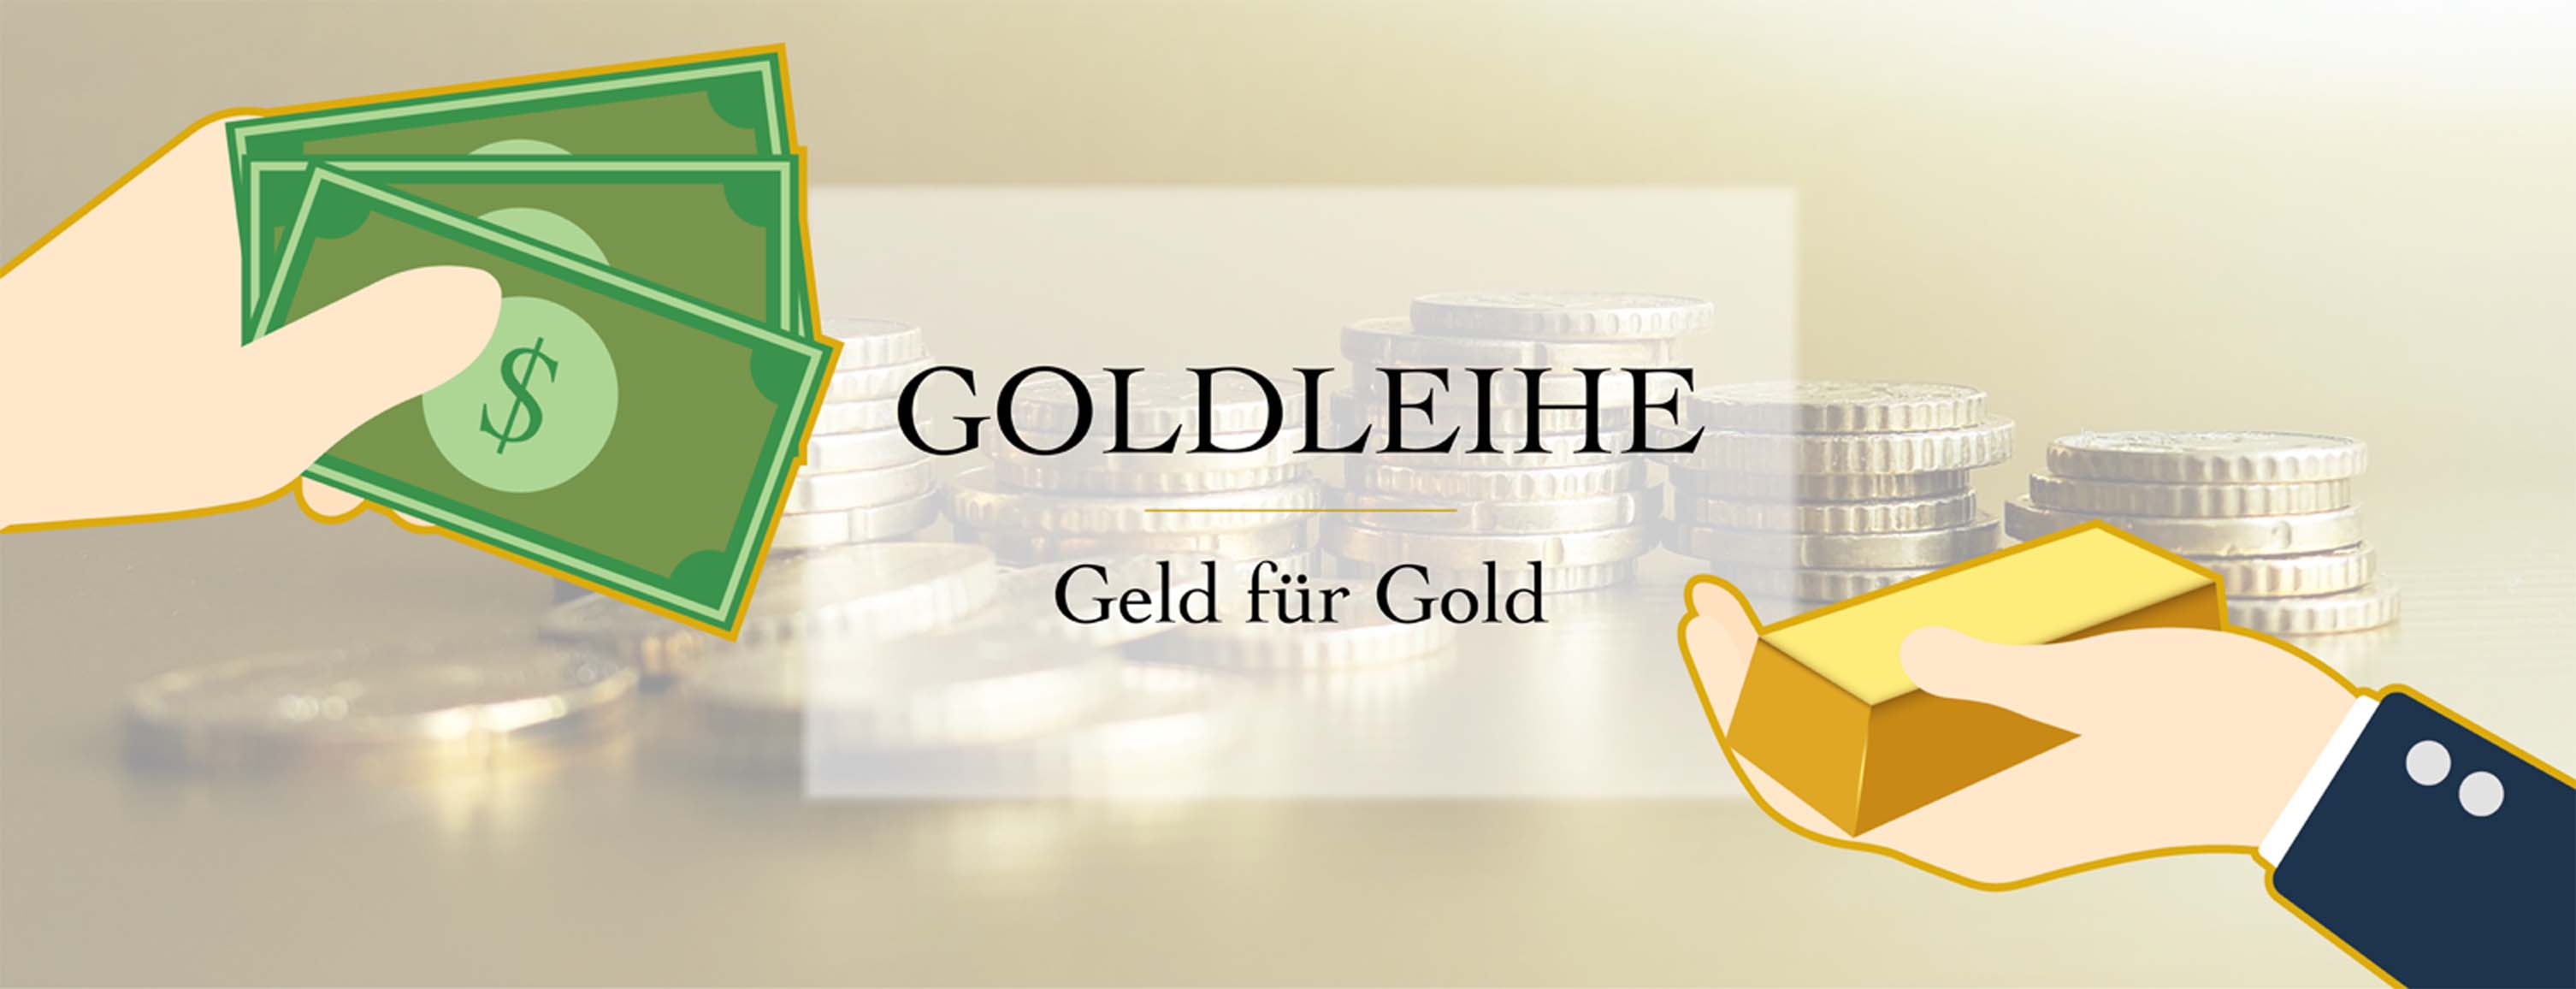 Goldleihe-Banner